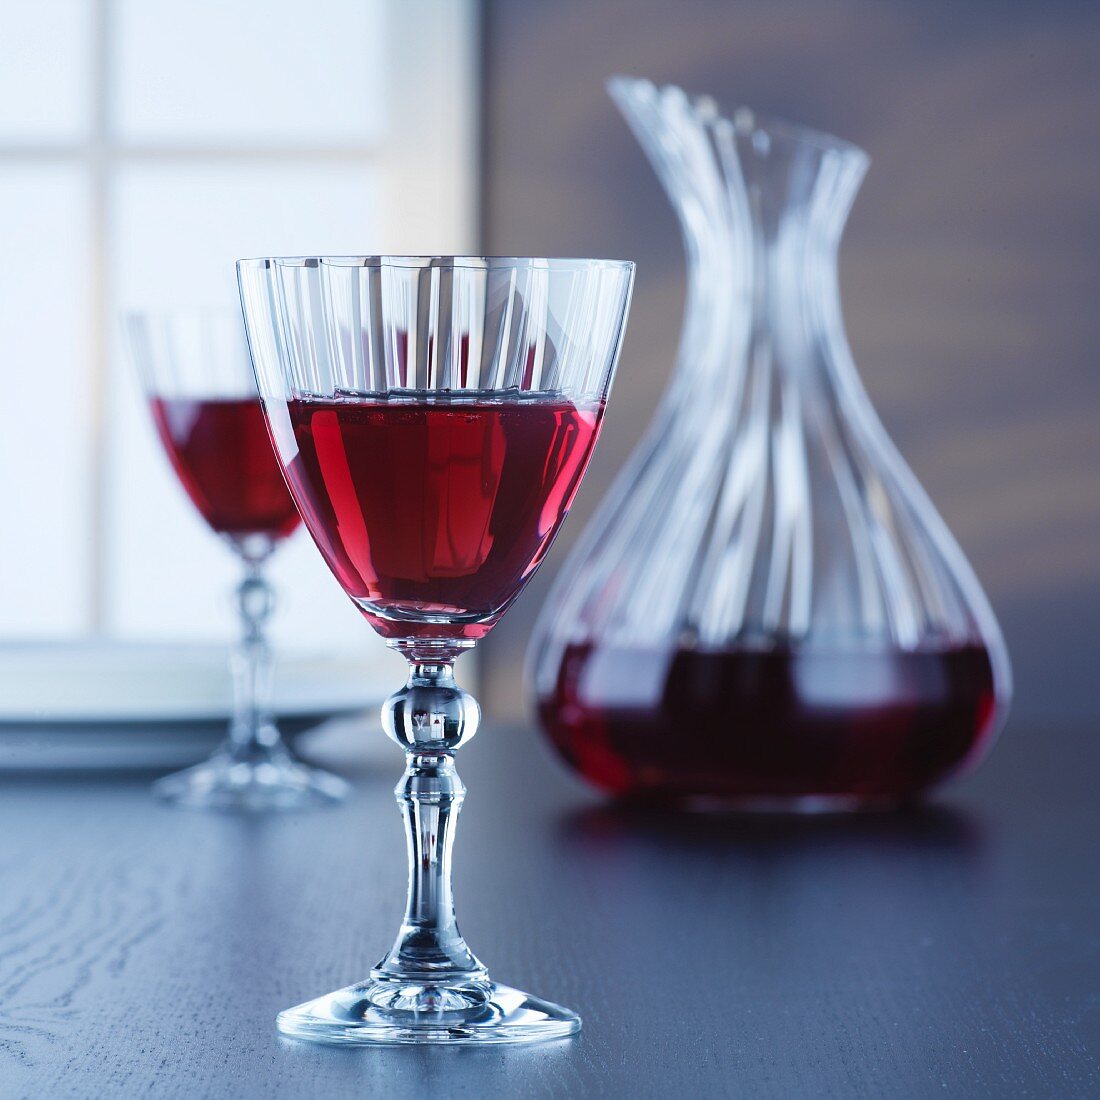 Karaffe & Gläser mit Rotwein